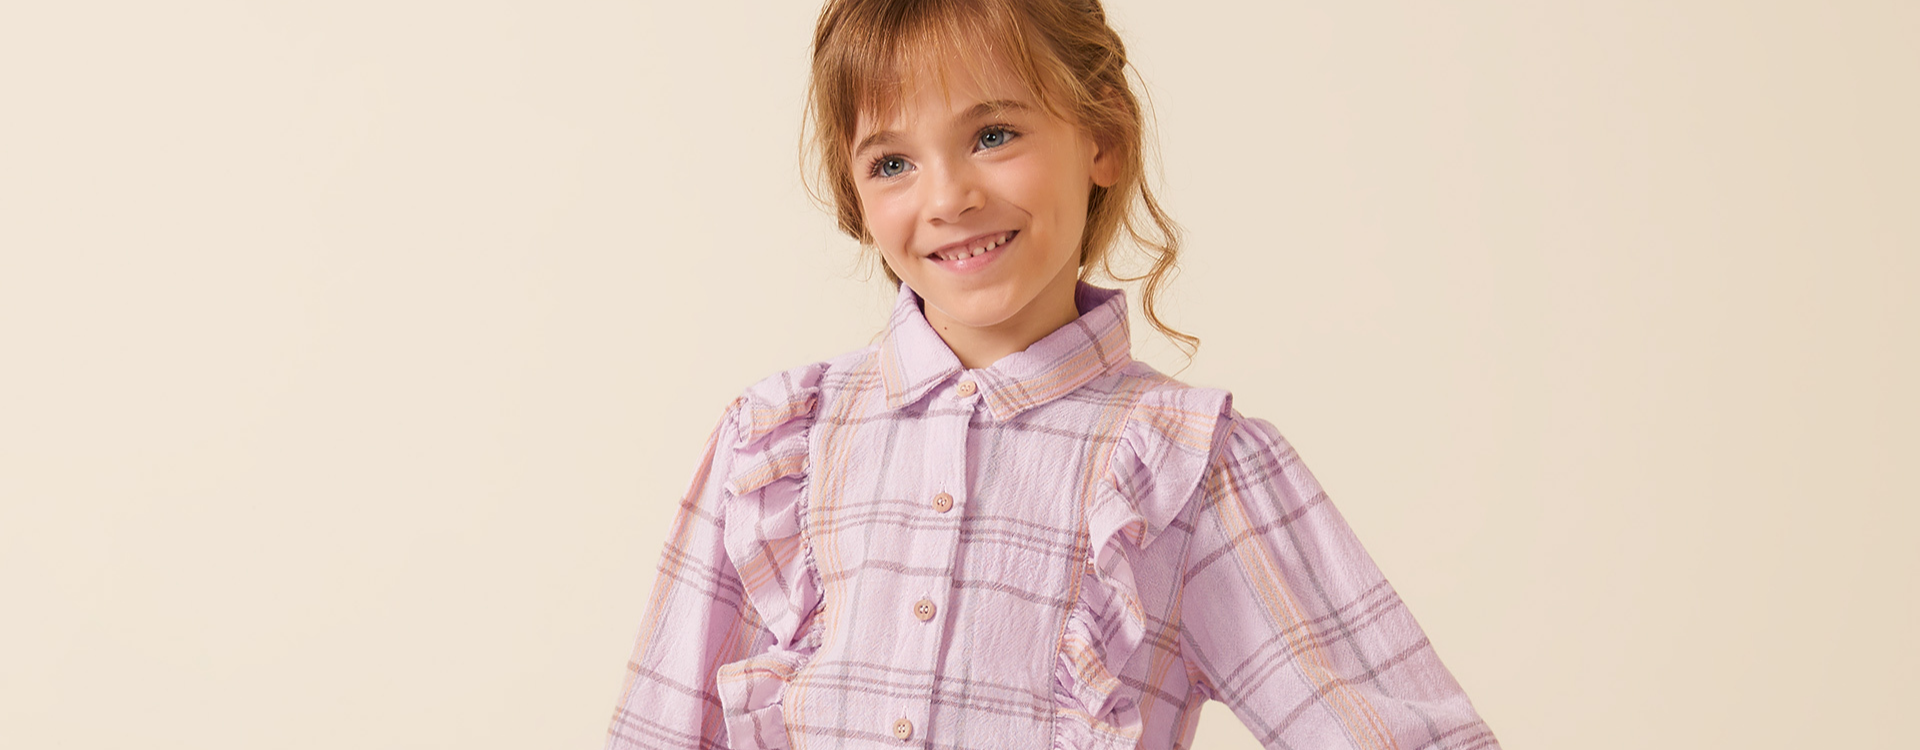 menina vestindo look infantil com blusa xadrez de manga comprida